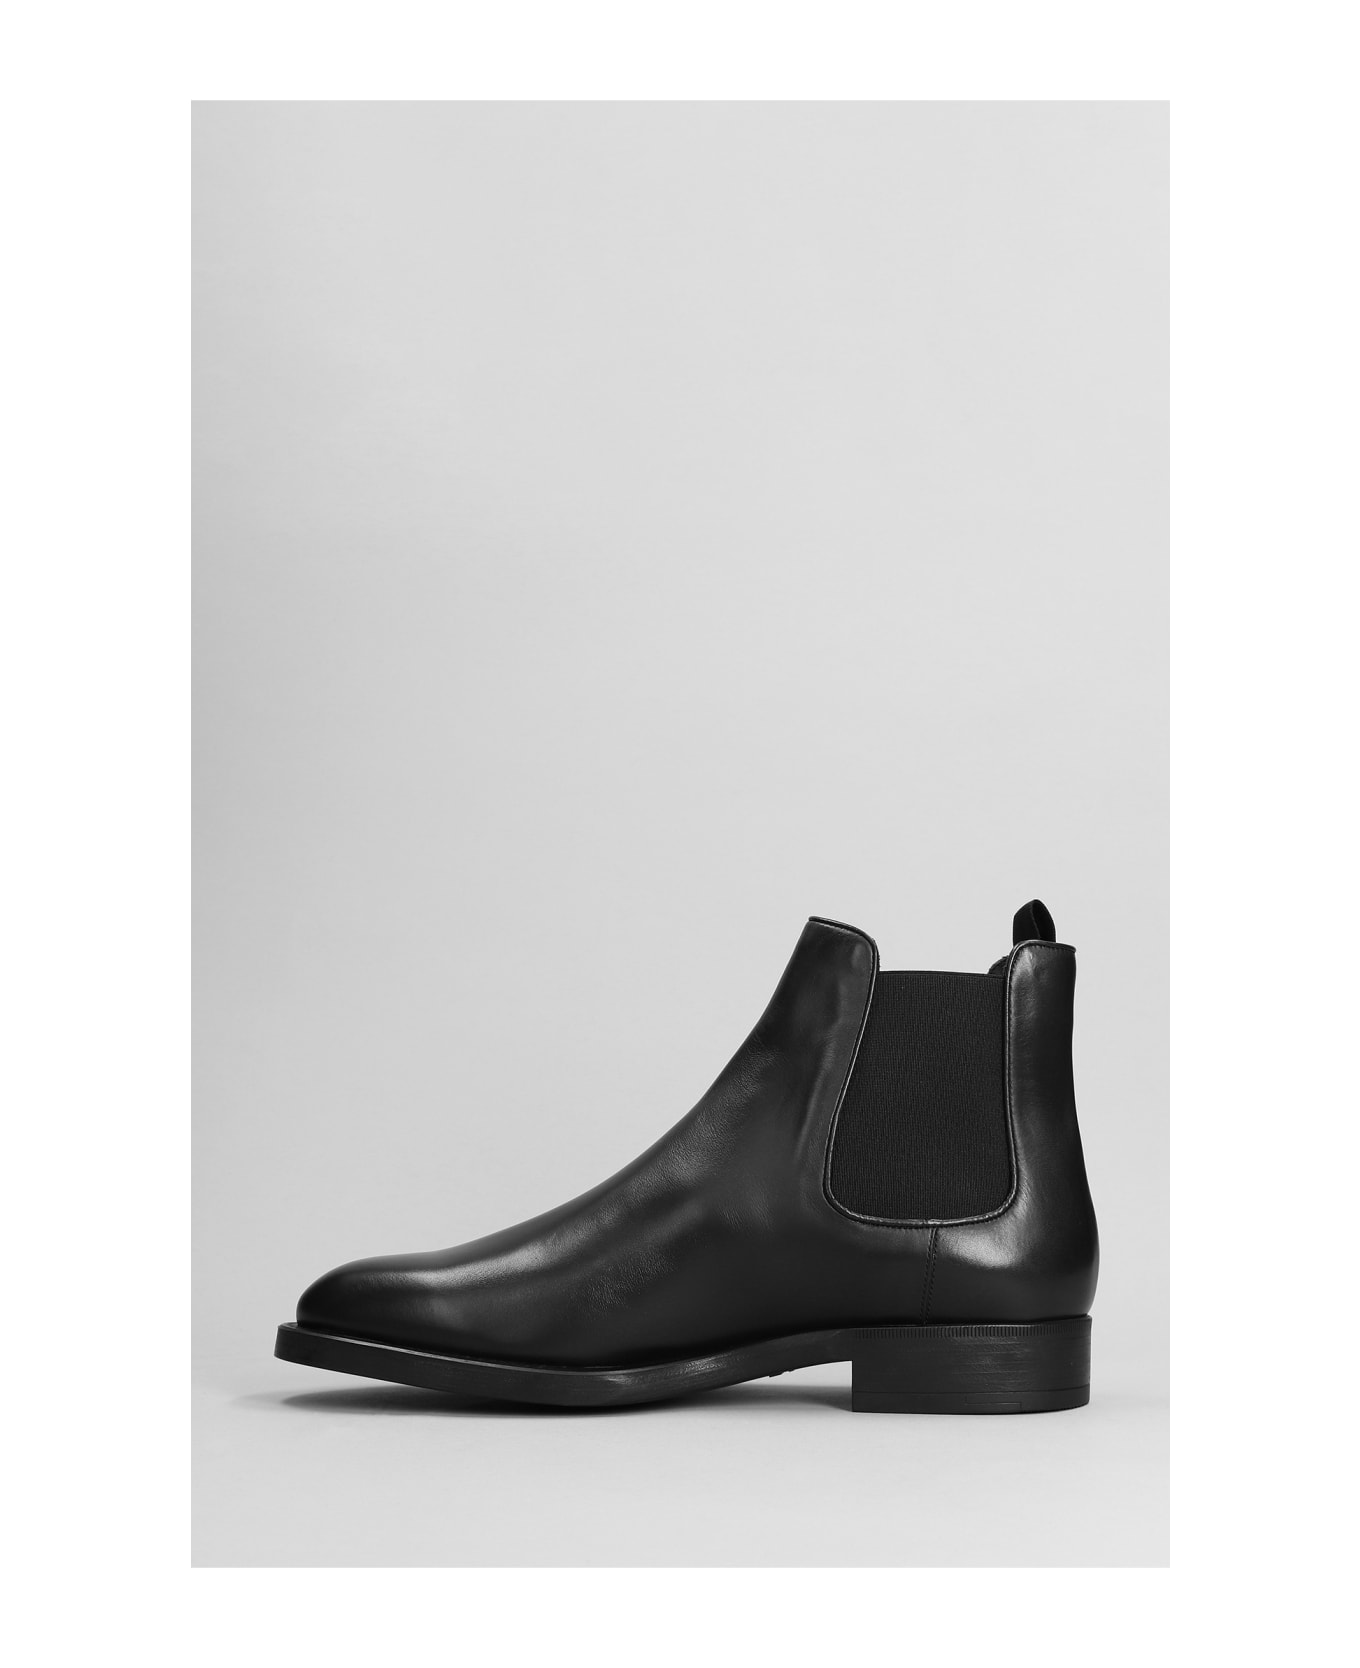 Giorgio Armani Ankle Boots In Black Leather - black